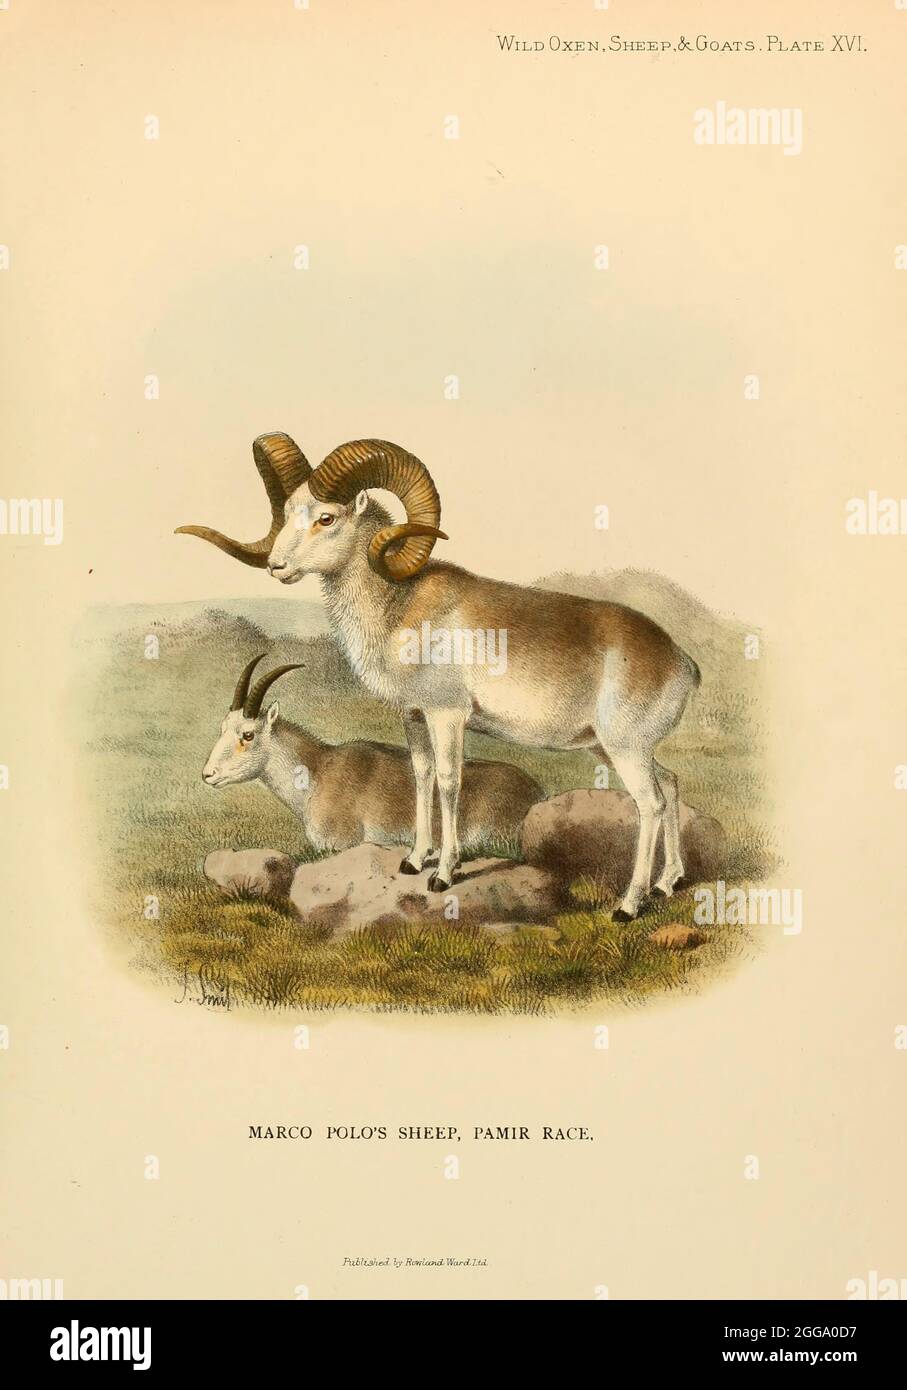 Le mouflon de Marco Polo (Ovis ammon polii) [ici comme Ovis poli] est une sous-espèce de mouflons d'argali, du nom de Marco Polo. Leur habitat est les régions montagneuses de l'Asie centrale. Les moutons de Marco Polo se distinguent surtout par leur grande taille et l'illustration de couleur des cornes en spirale du livre ' Wild oxen, moutons & chèvres de toutes les terres, vivant et éteint ' par Richard Lydekker (1849-1915) publié en 1898 par Rowland Ward, Londres Banque D'Images